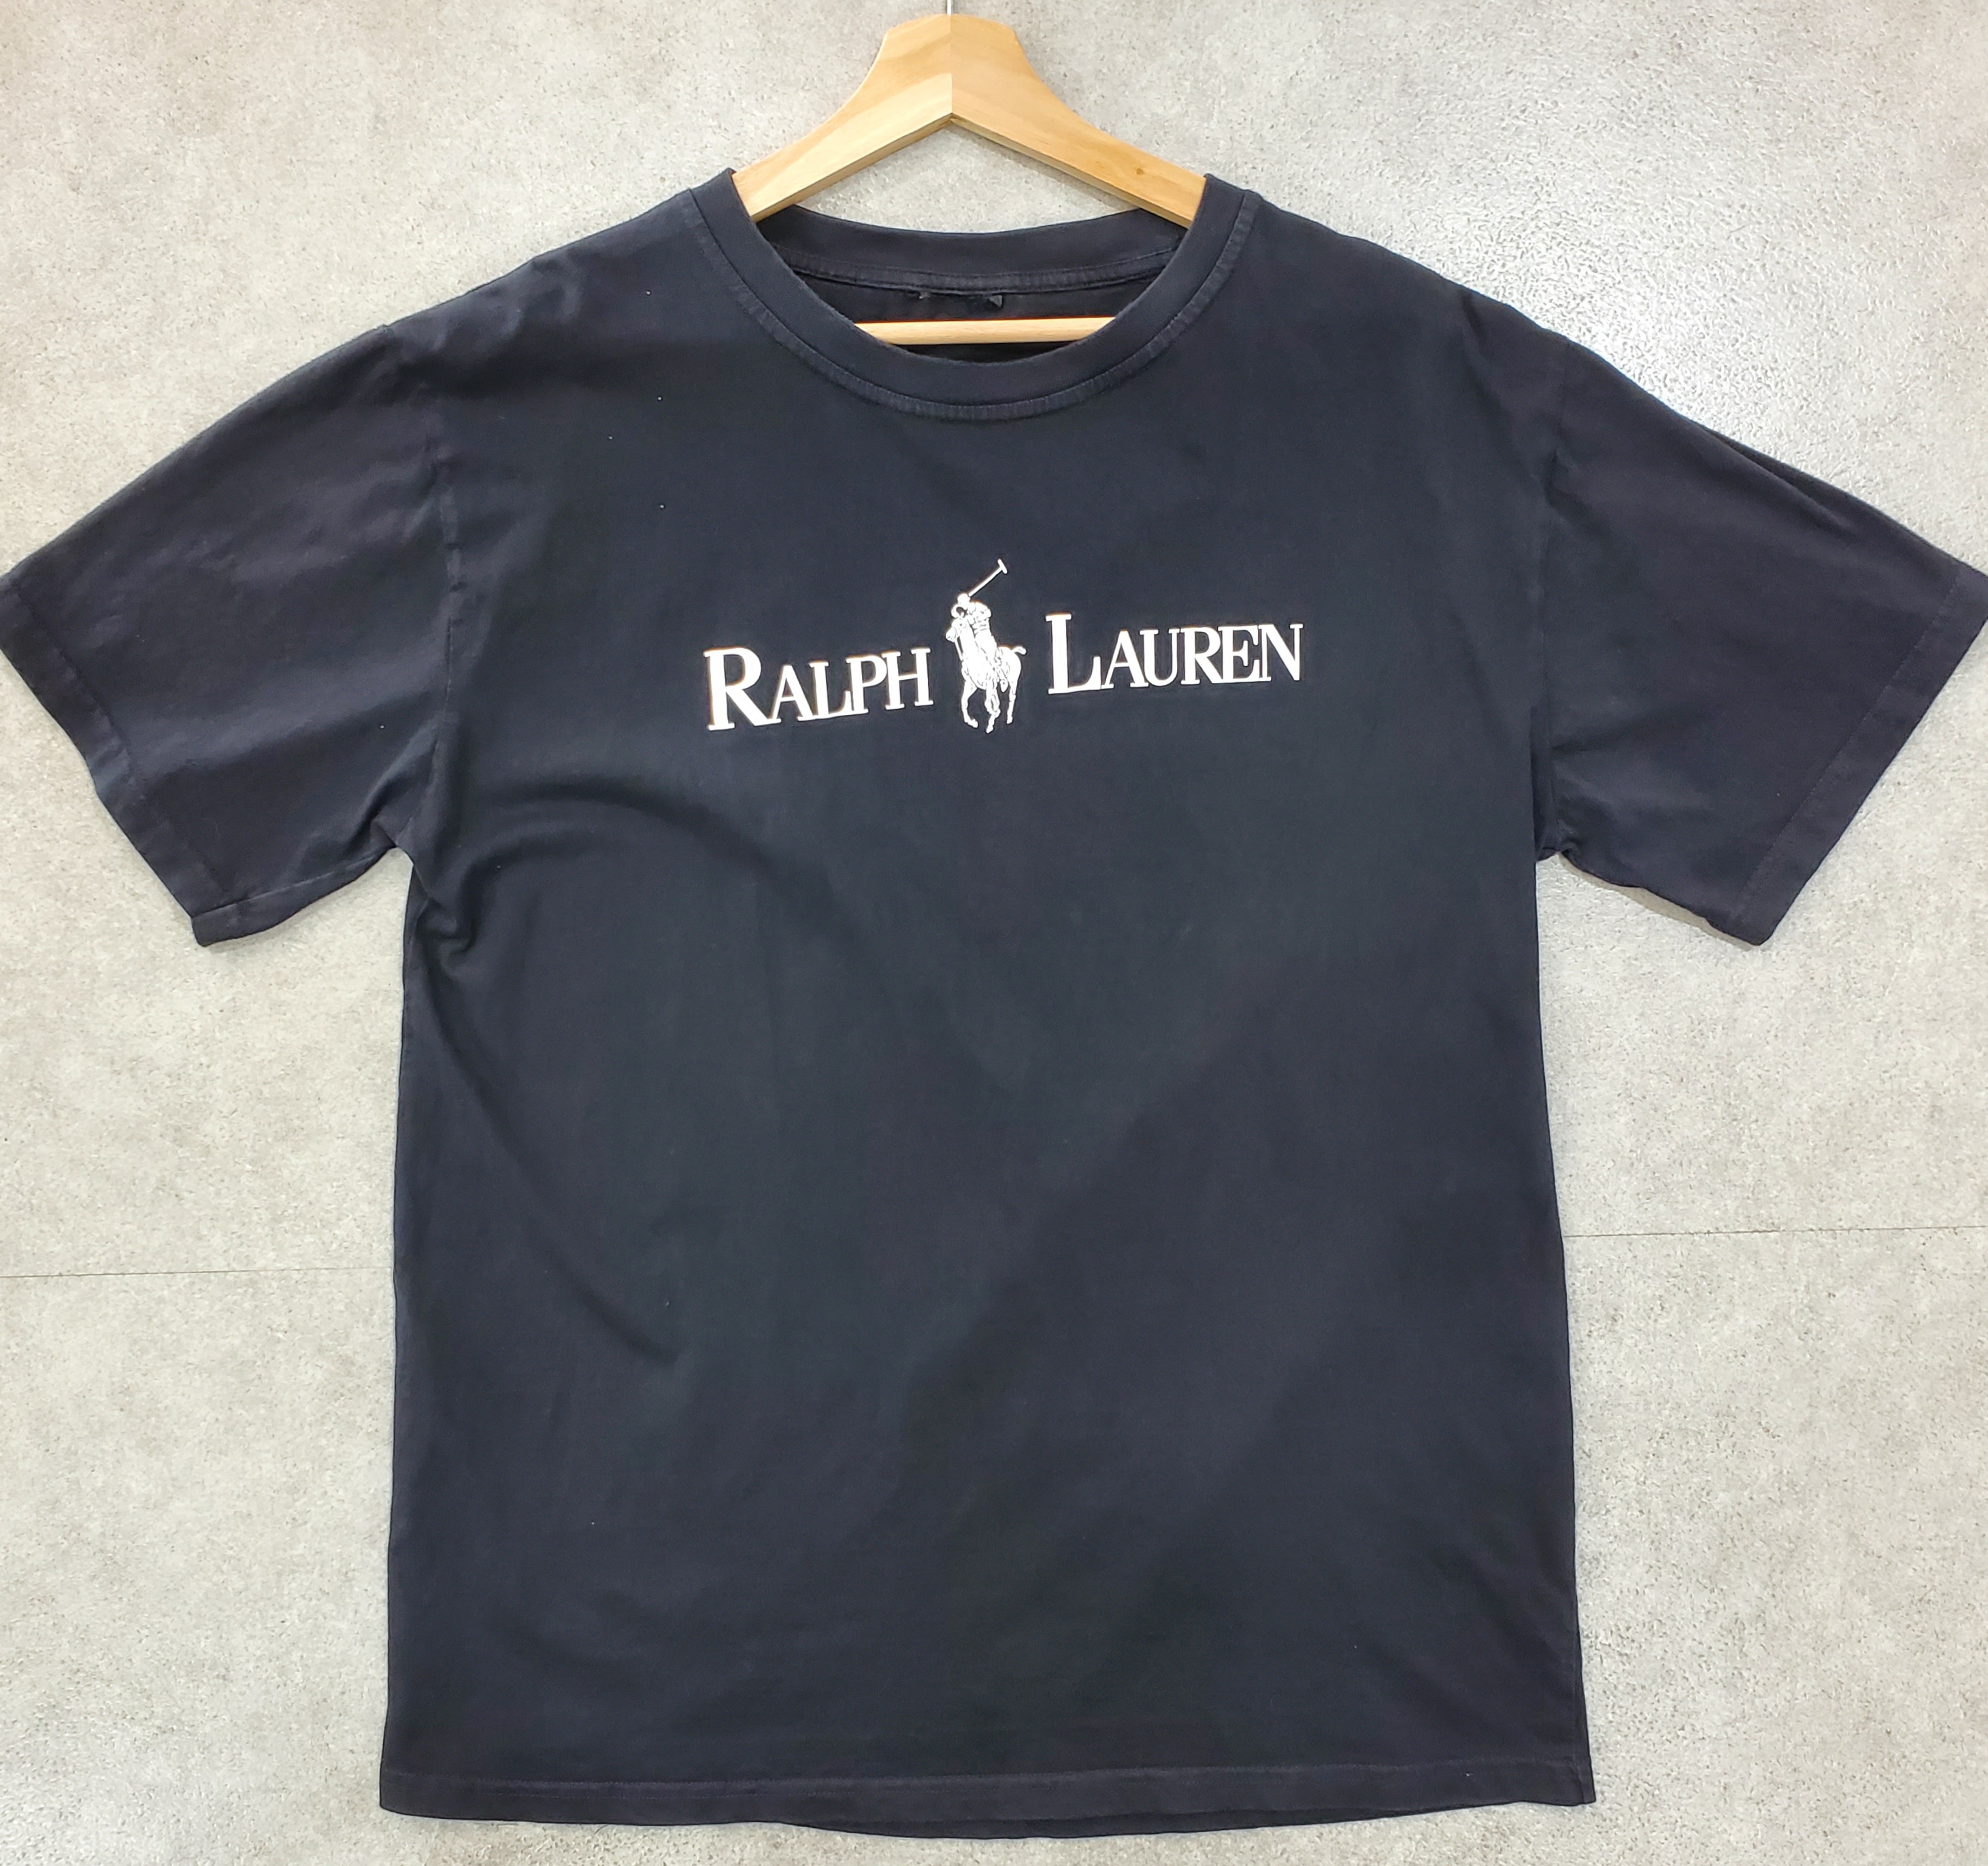 即日発送】 ralph lauren 古着 黒ビッグロゴプリントティーシャツ